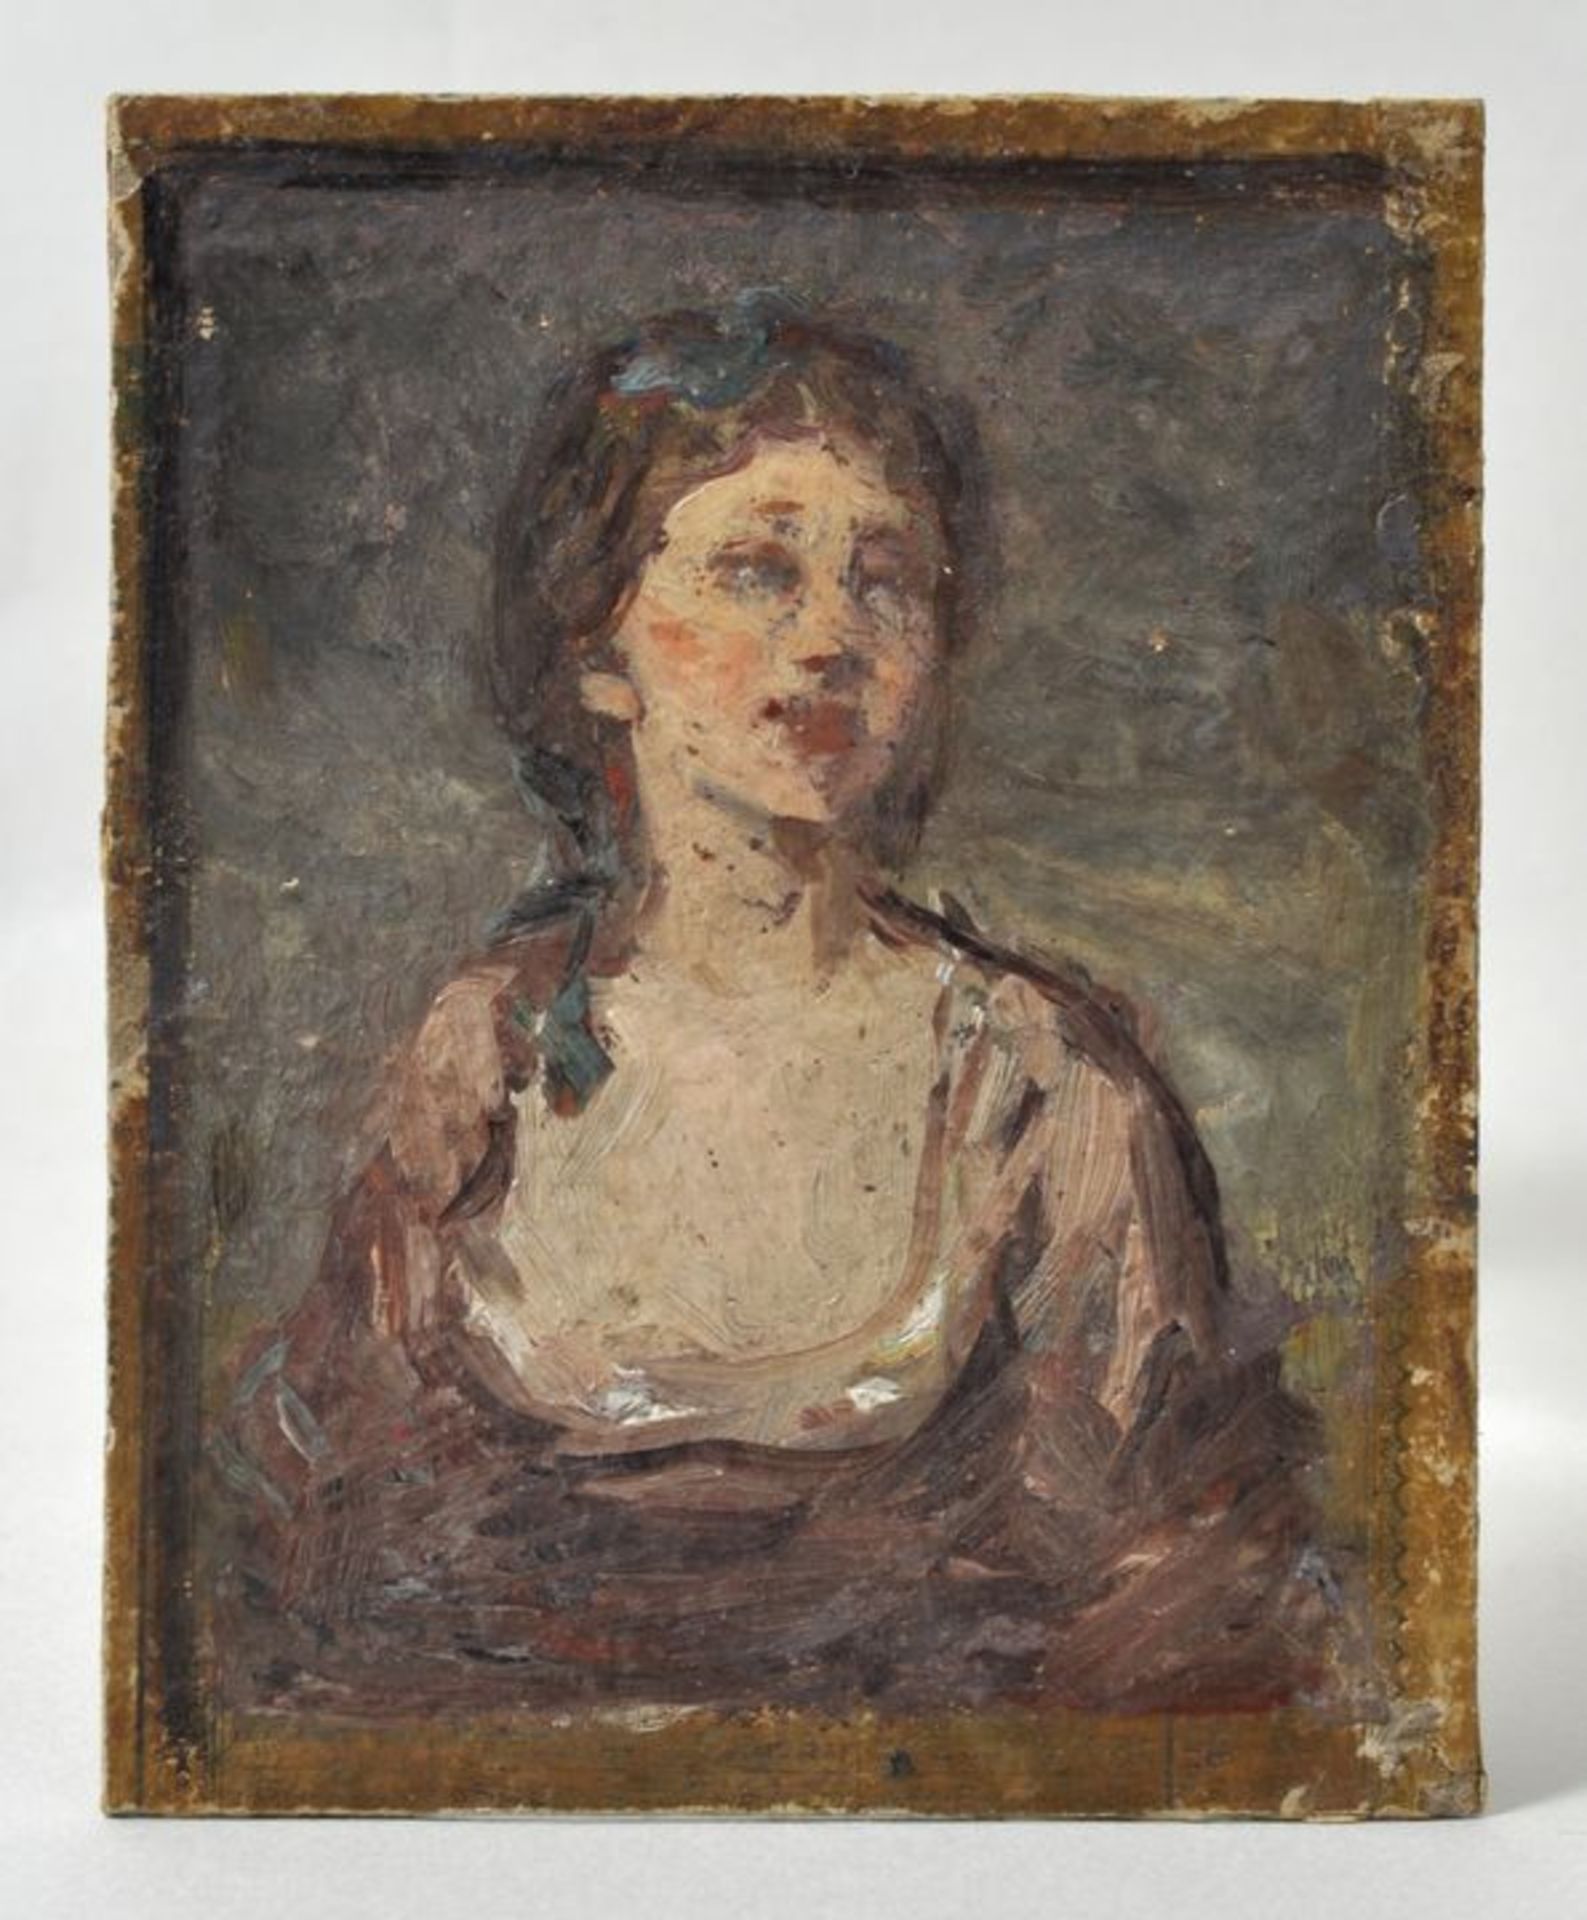 Amberg, Wilhelm. 1822-1899 BerlinBildnis einer jungen Frau. Ölstudie auf Pappe, verso